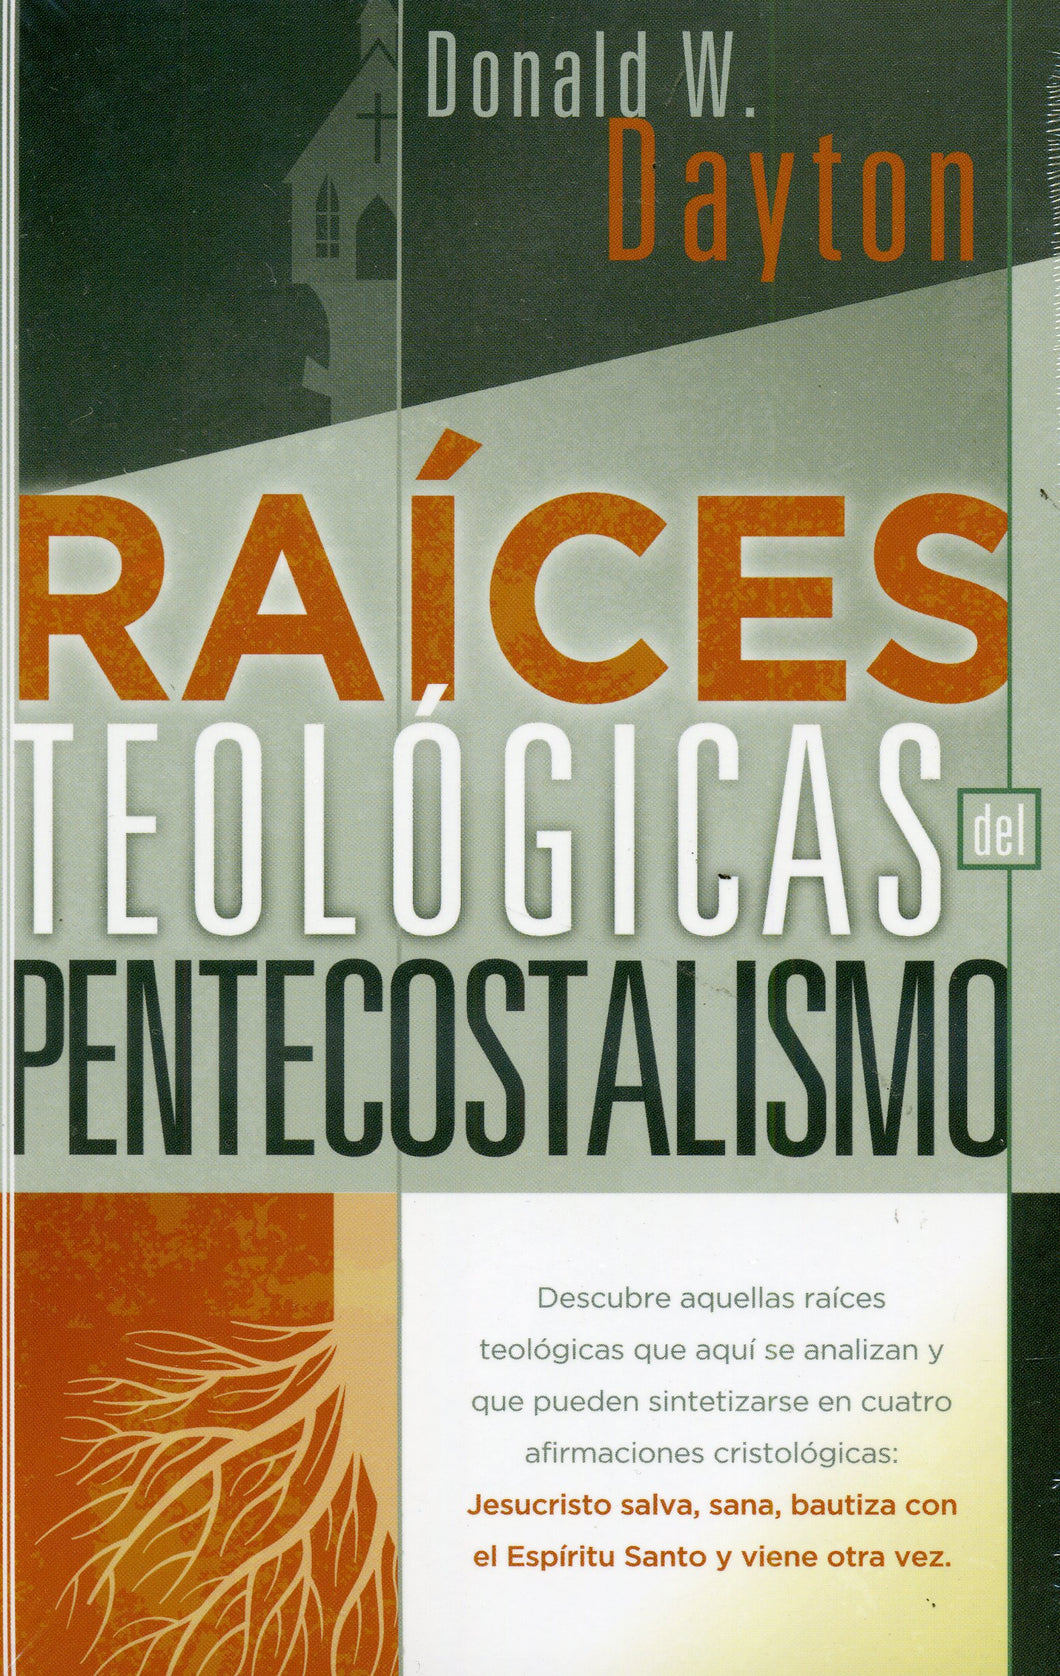 Raices Teologicas del Pentecostalismo by Libros Desafios